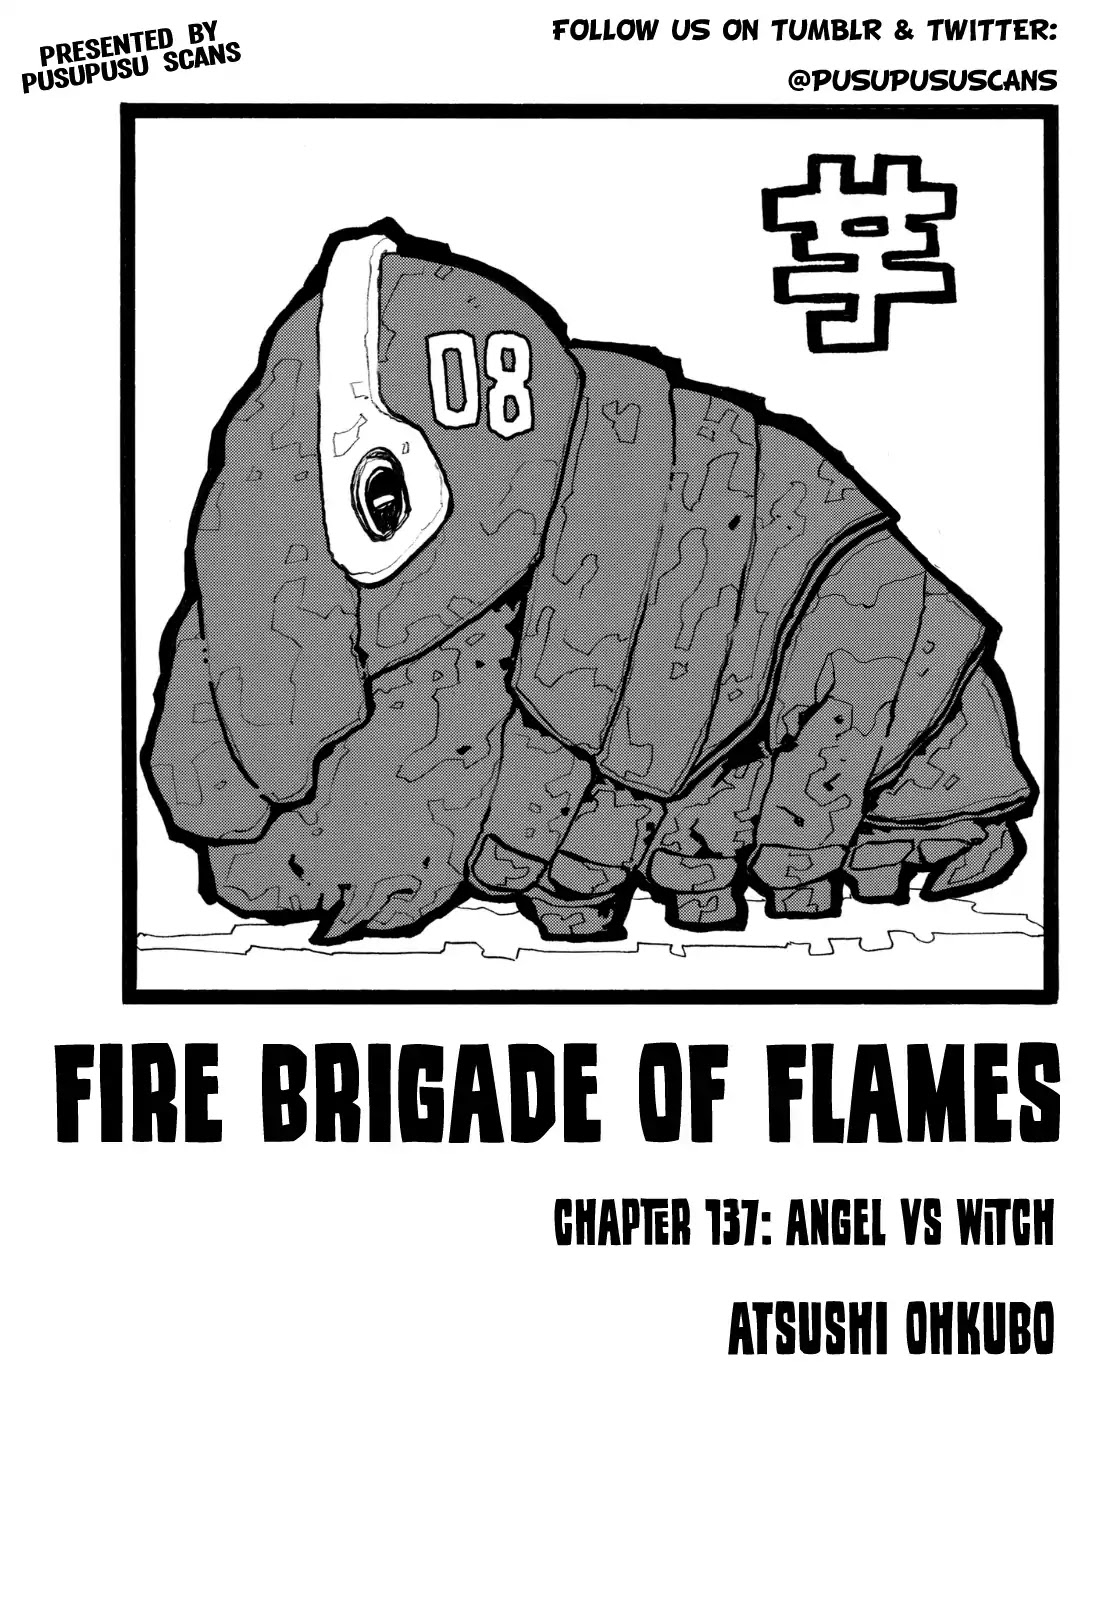 Fire Force, Fire Force manga, Fire Force anime, Enen no shouboutai, Enen no shouboutai manga, Enen no shouboutai anime, manga